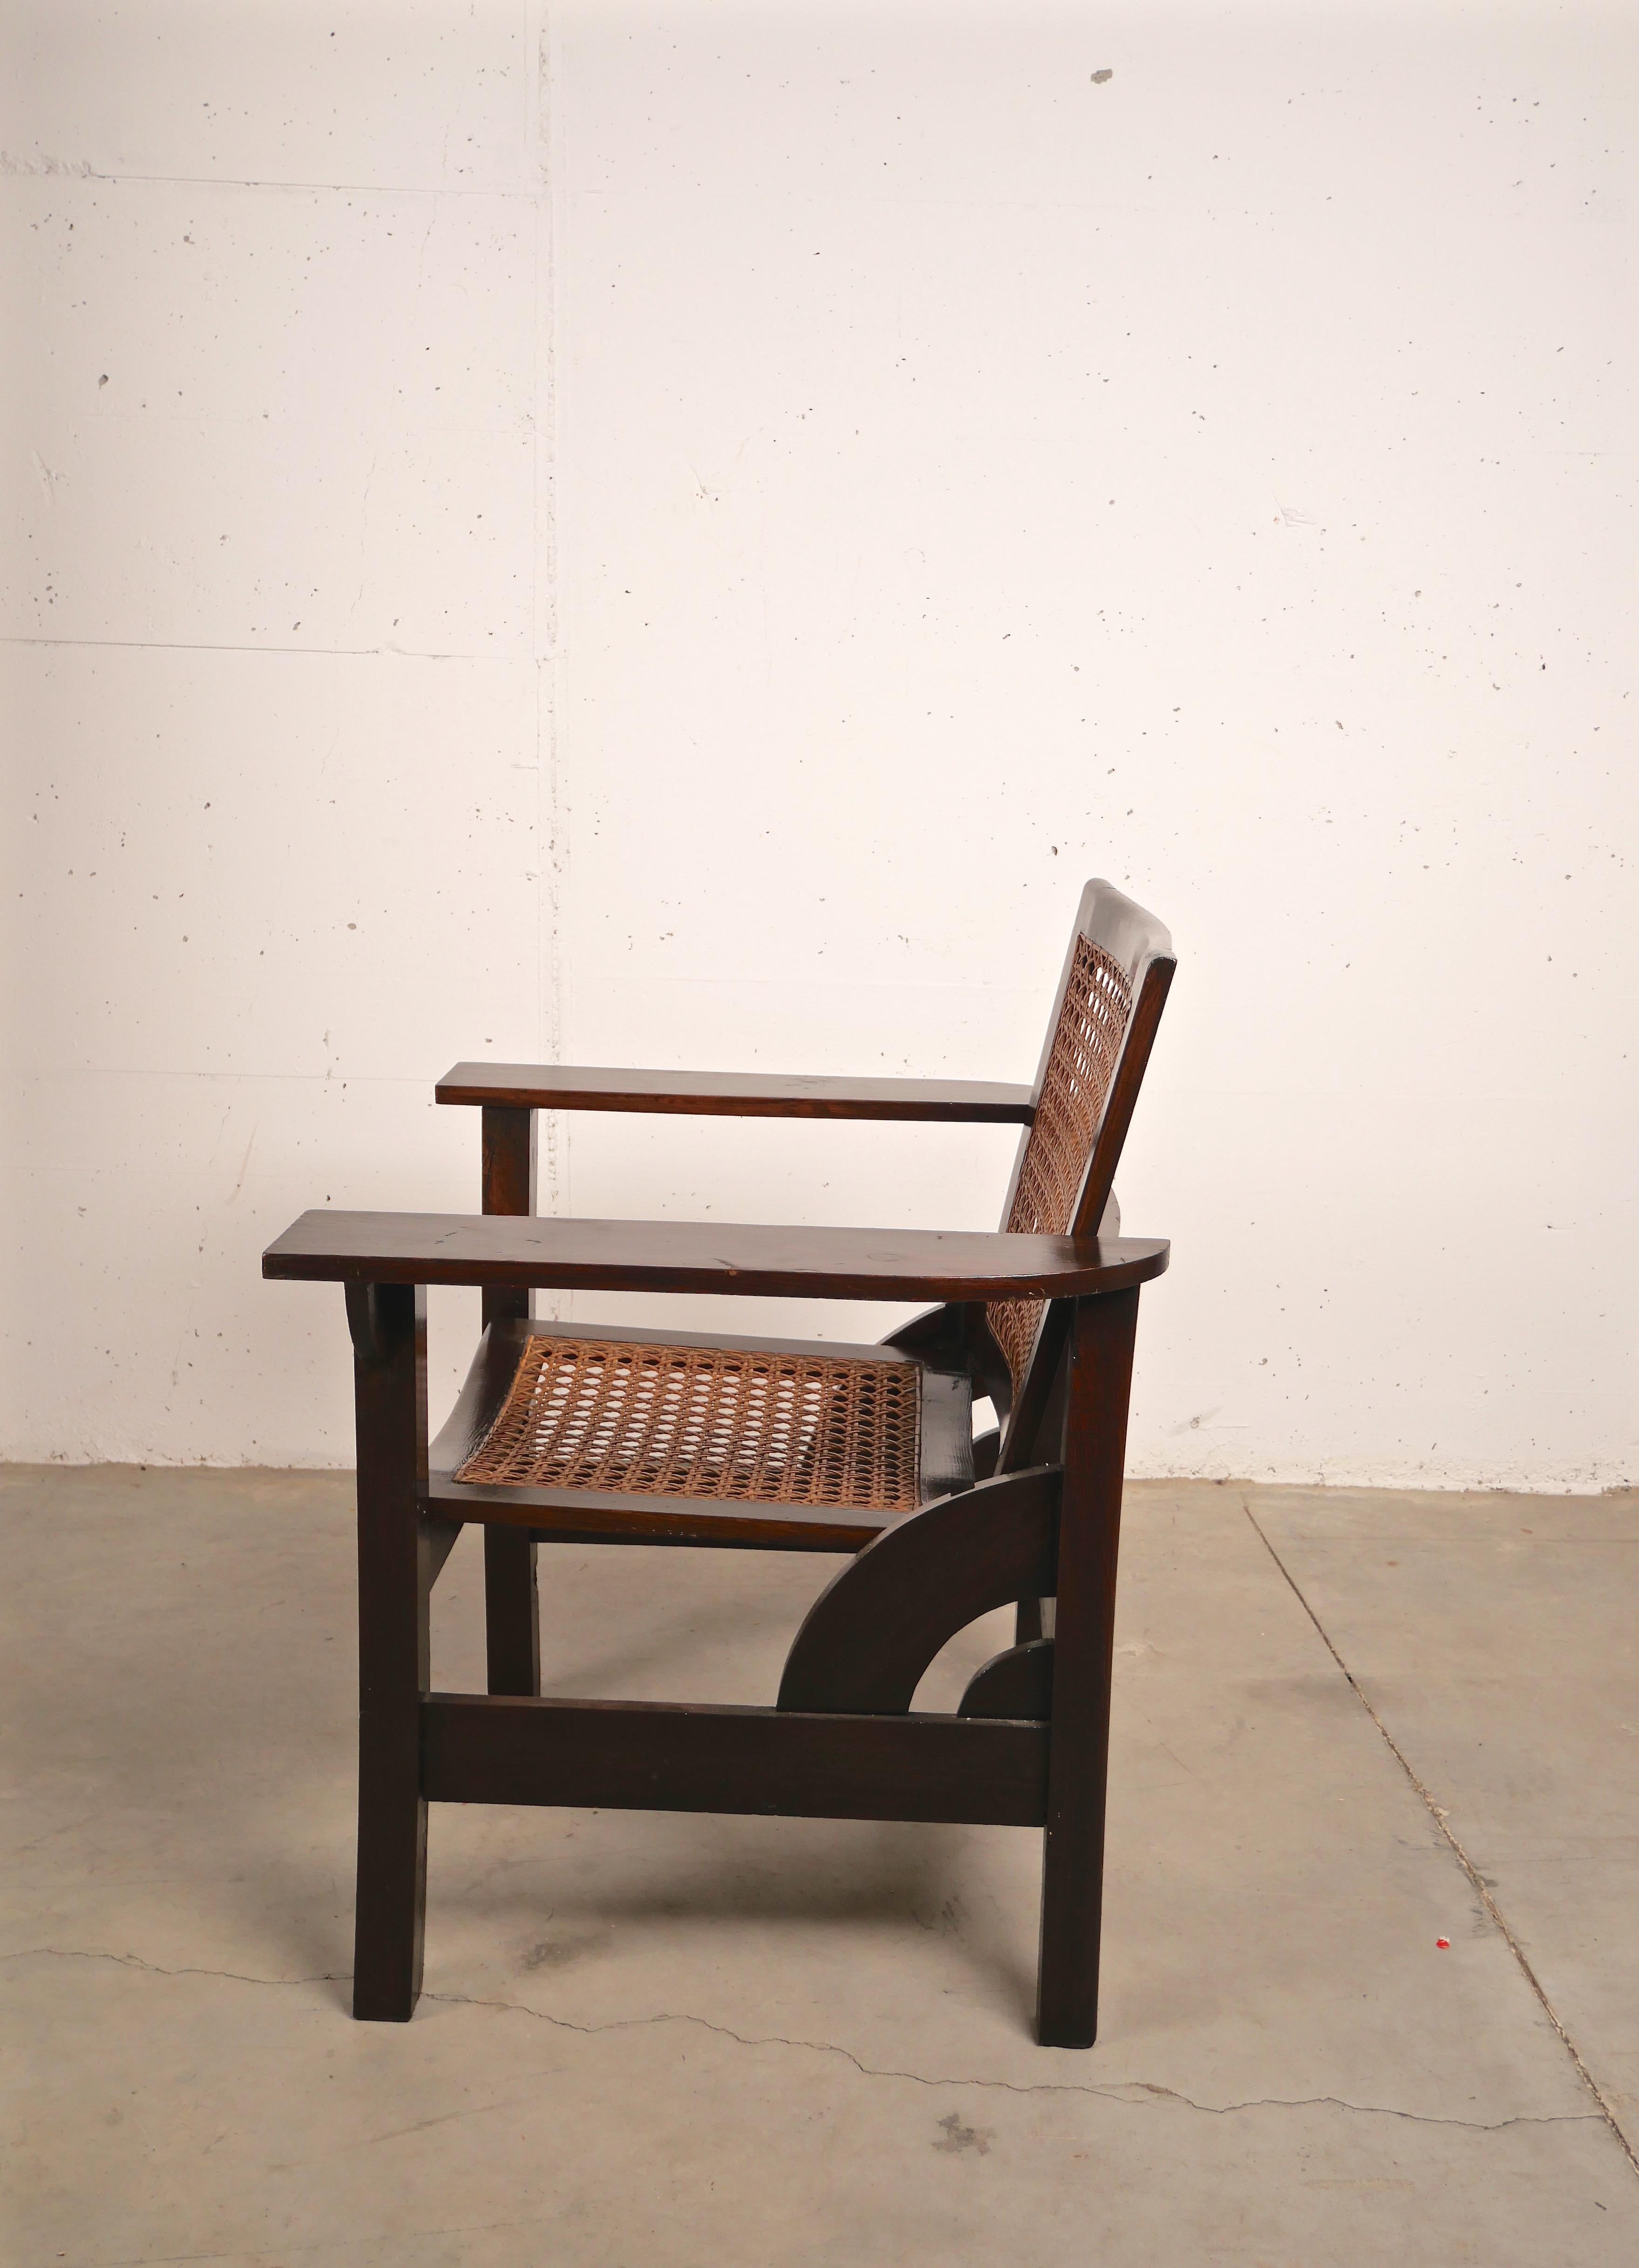 Le fauteuil Hendaye a été conçu dans les années 1930 par Pierre Dariel. Il est composé d'une structure entièrement en noyer, d'une assise et d'un dossier en rotin avec dossier rabattable. Ce modèle est équipé d'un système de porte-bagages à trois